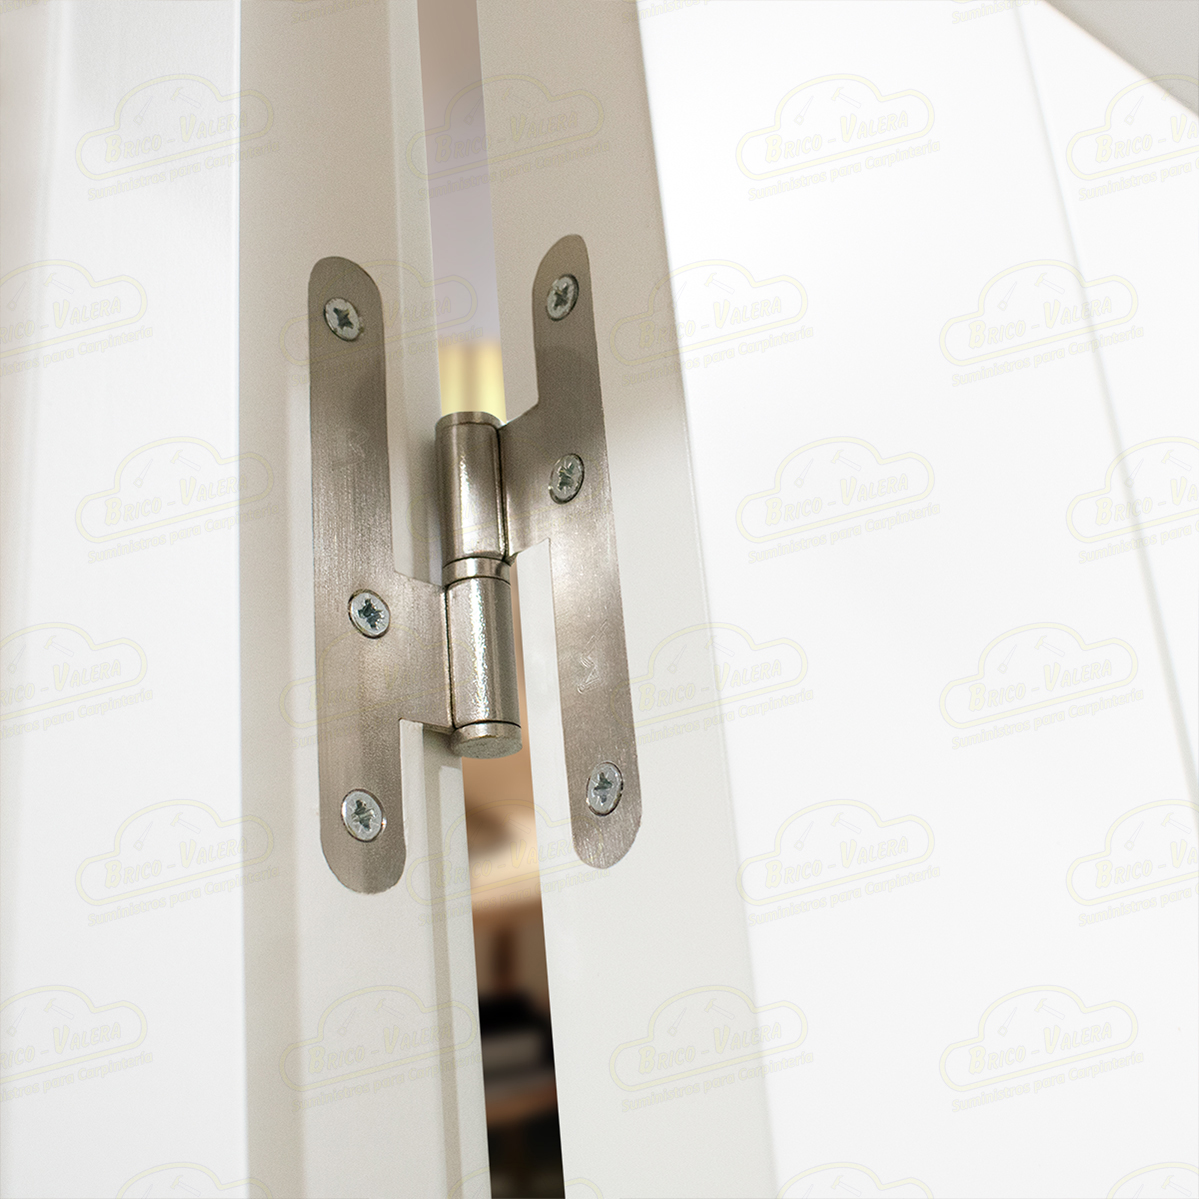 Puerta Doble de Salón con fijo Aranjuez-V2 Lacada Blanca de Interior en Block (Maciza)